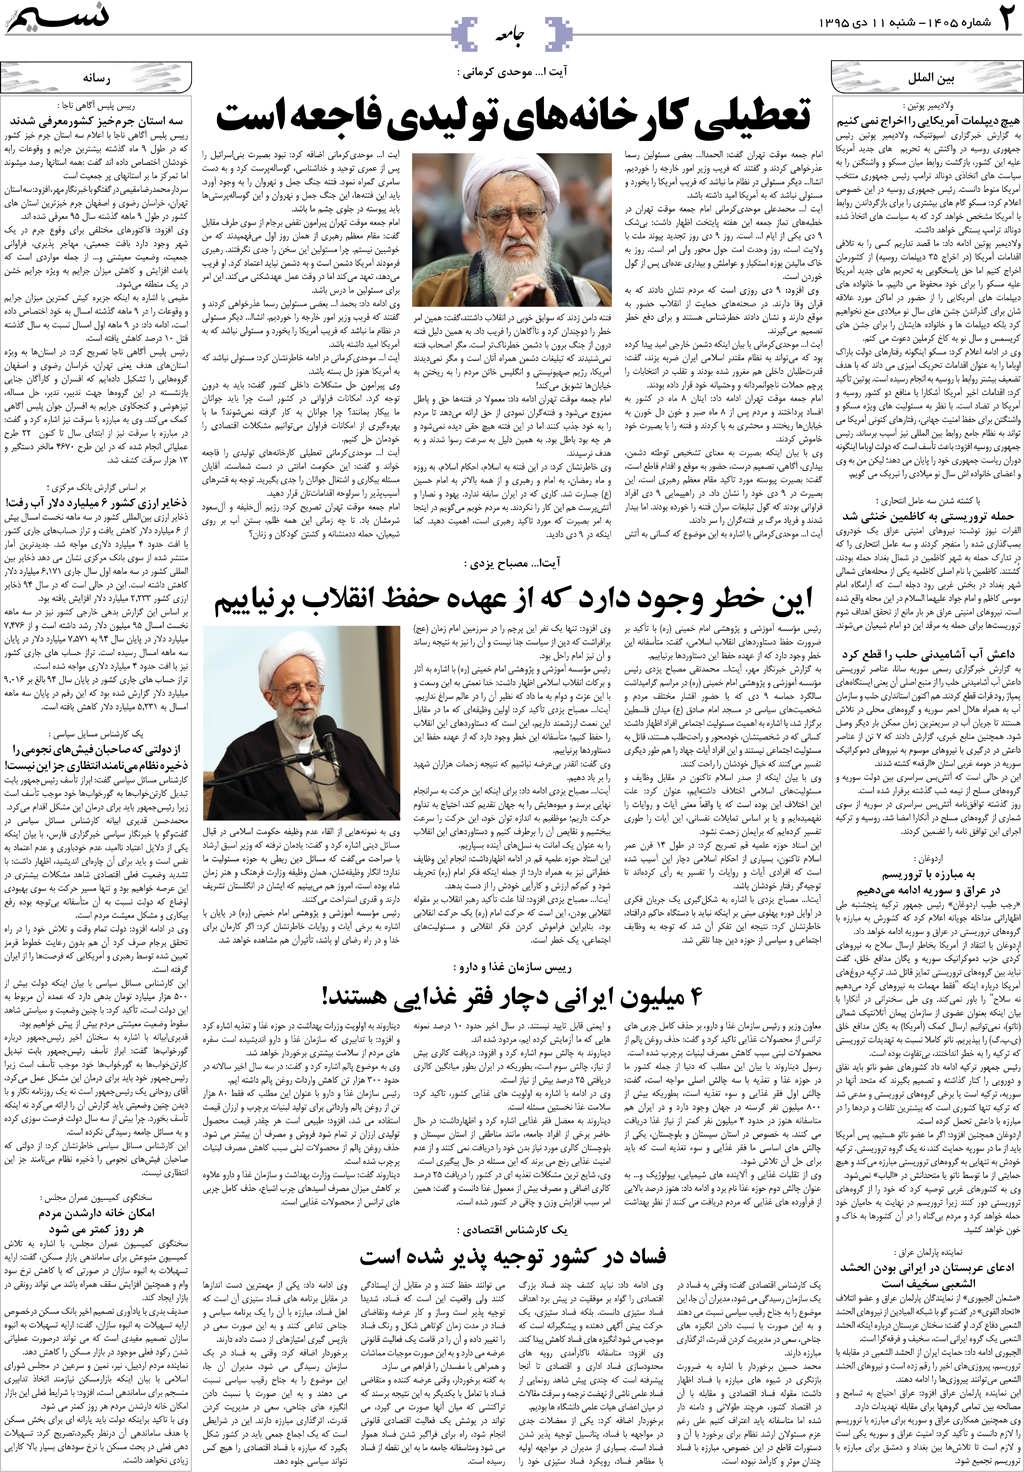 صفحه جامعه روزنامه نسیم شماره 1405